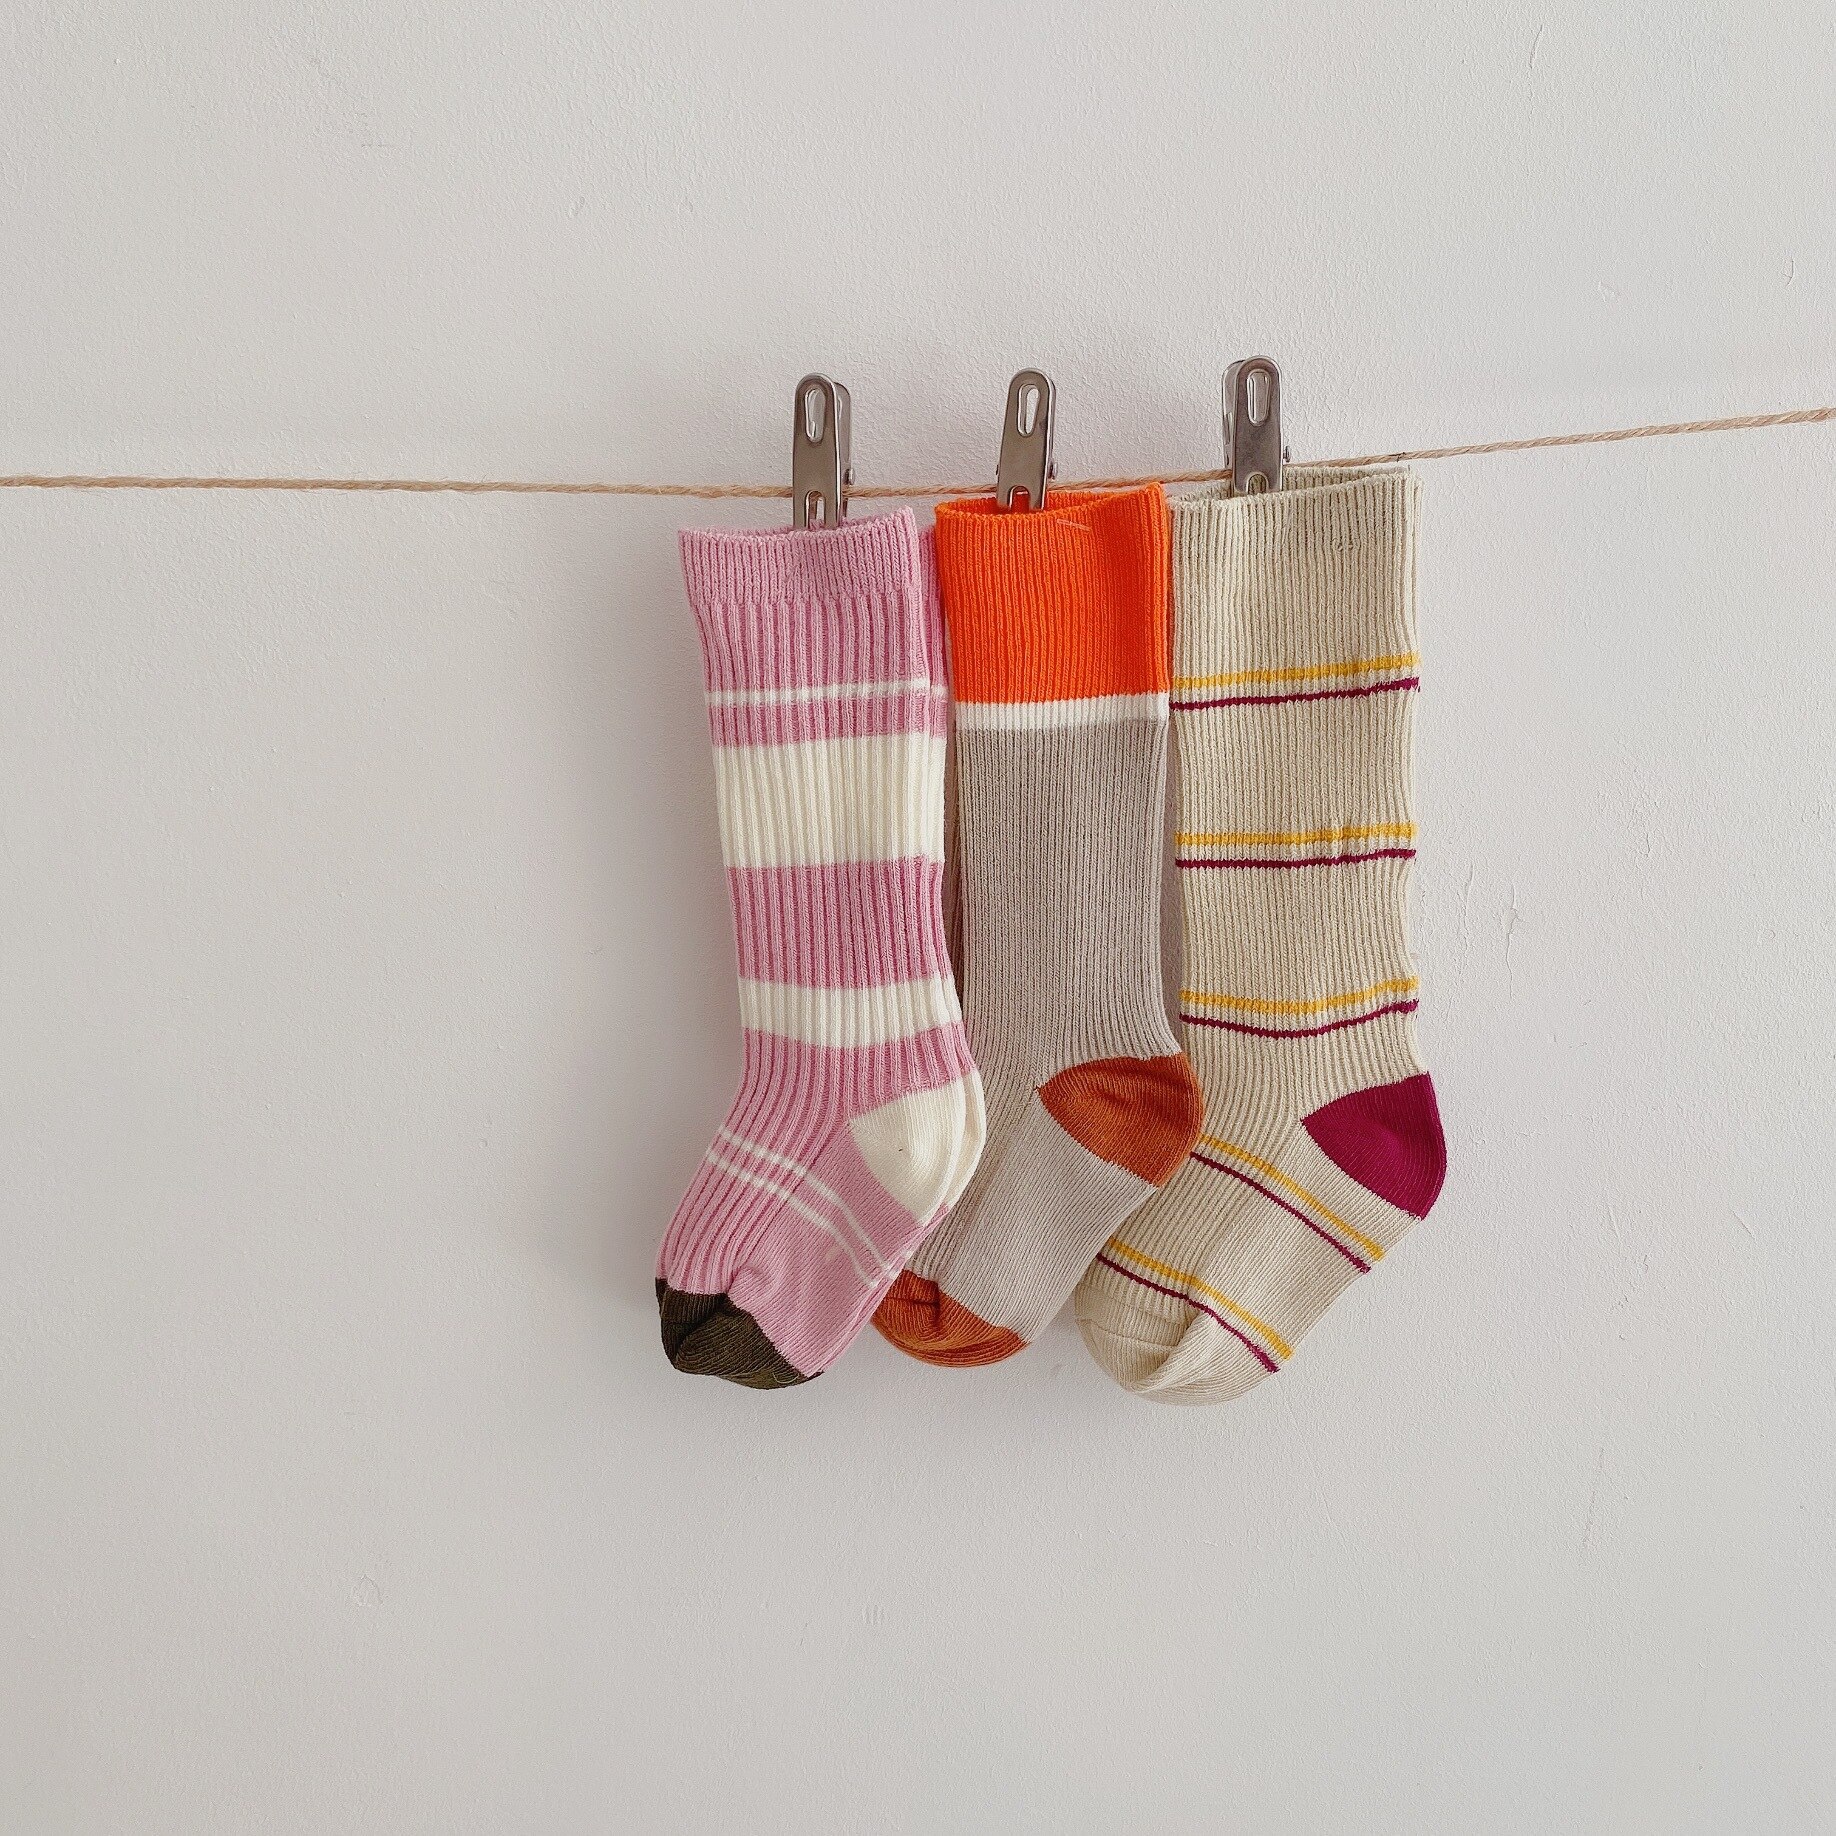 3 Pairs/lot Children Baby Socks Knitted Cotton Long Tube Socks Kids Knee High Toddler Socks Kids Girls Stripe Autumn Cute Socks: 3 pairs2 / S 1-3T